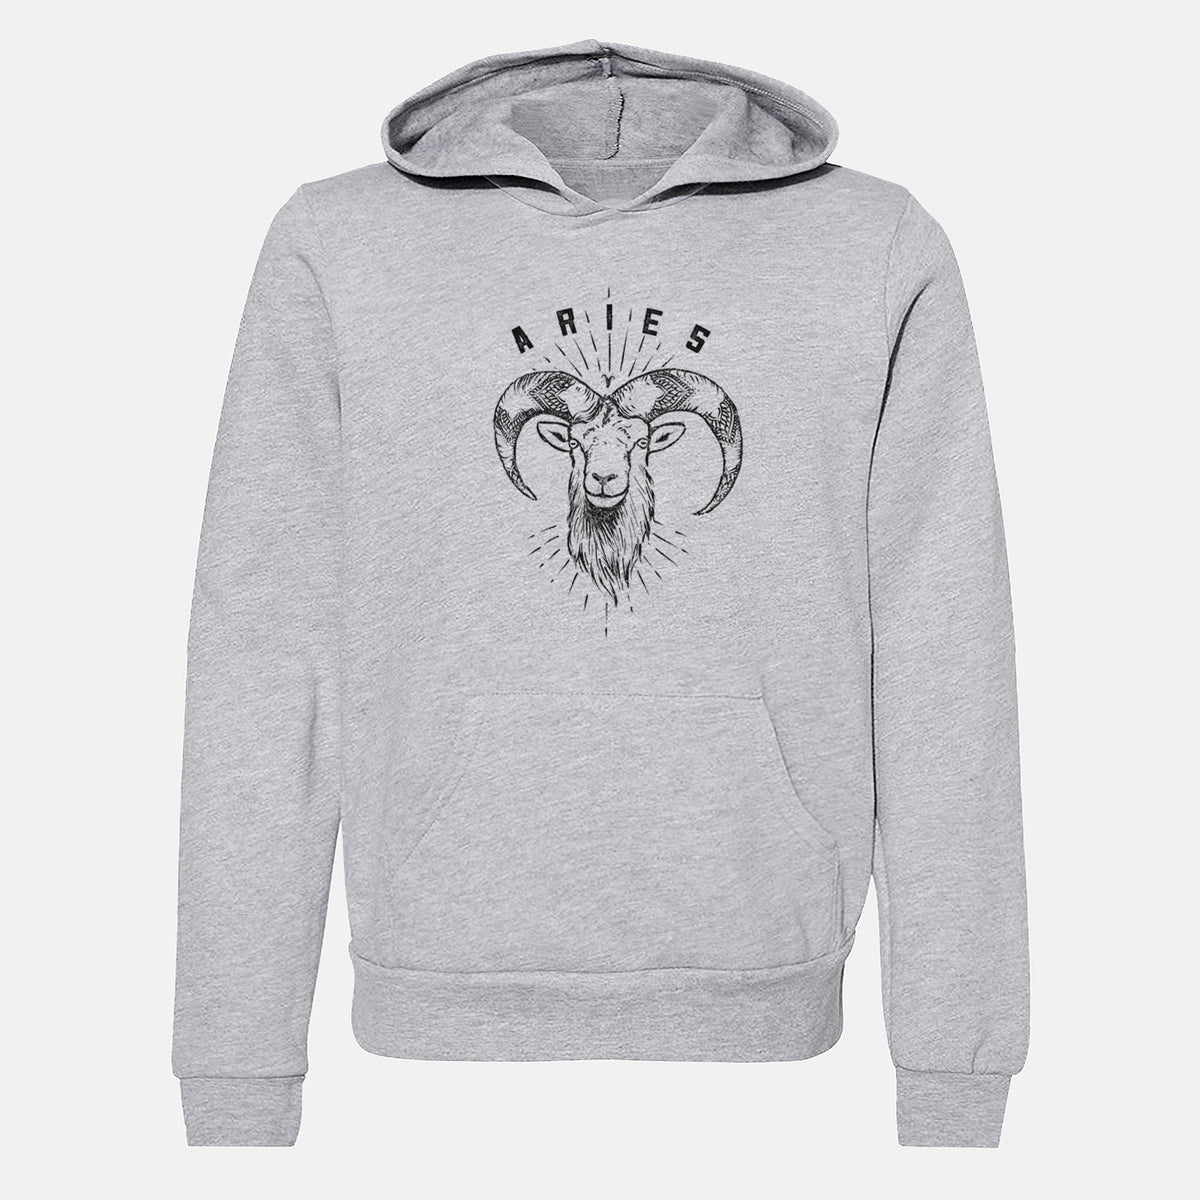 Aries - Ram - Youth Hoodie Sweatshirt